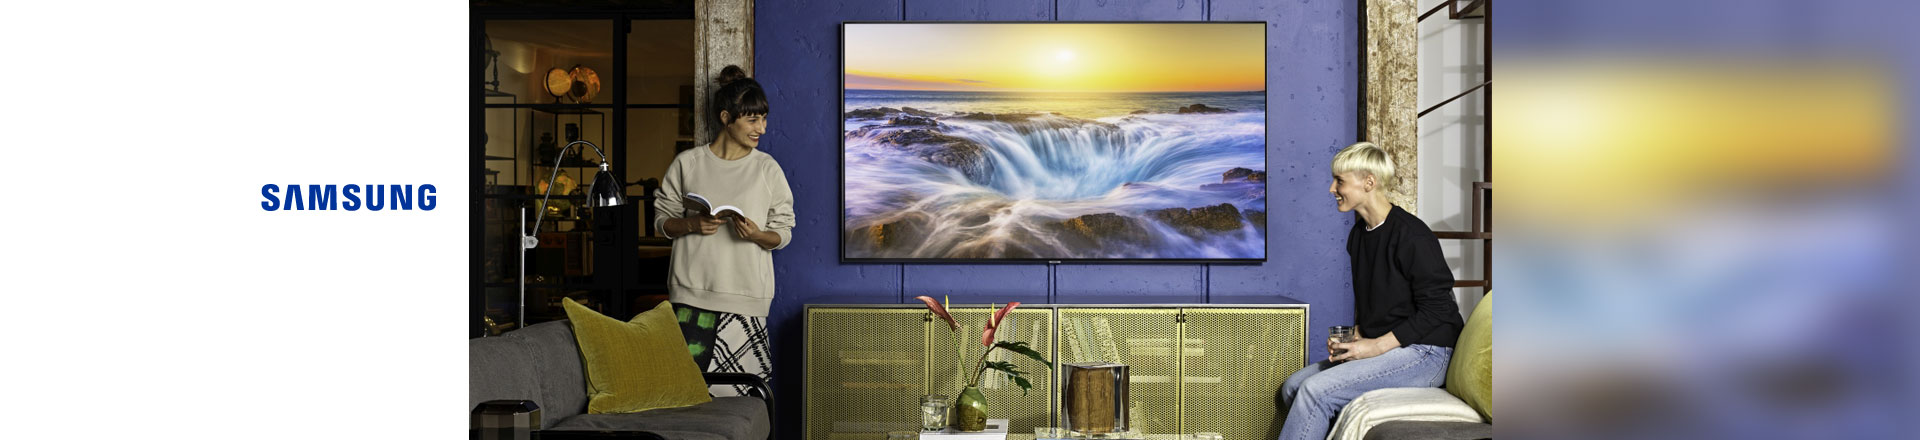 Samsung pobija rekordy w sprzedaży telewizorów.